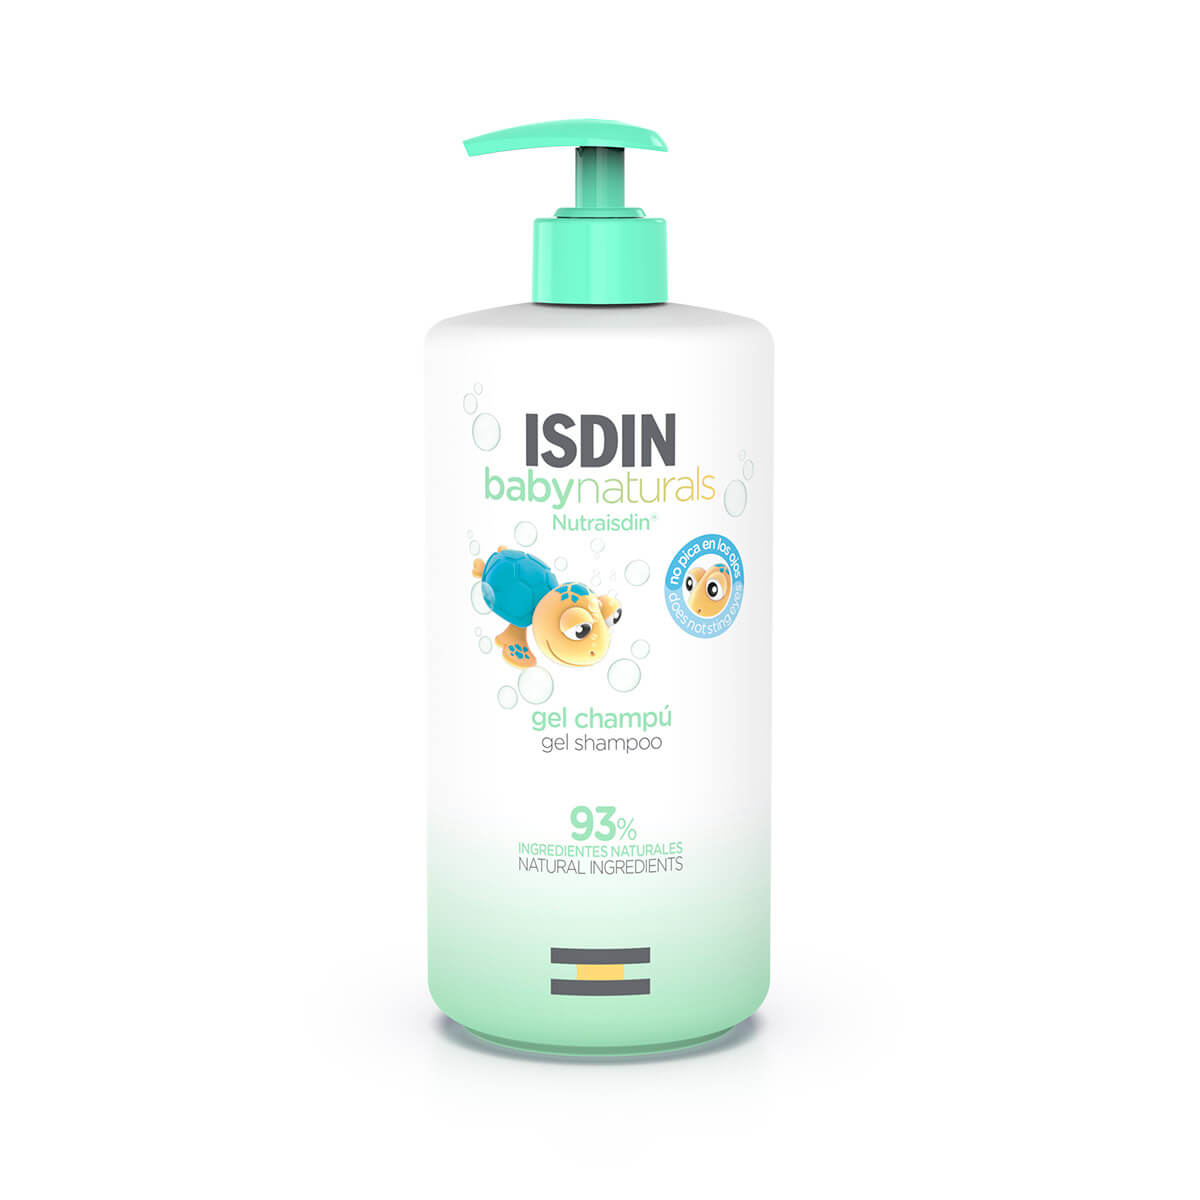 ISDIN - Te presentamos ISDIN Babynaturals, la gama que combina eficacia,  sostenibilidad y naturalidad para el cuidado y protección de la piel de tu  bebé👶. Rutina de baño: Paso 1: Gel champú